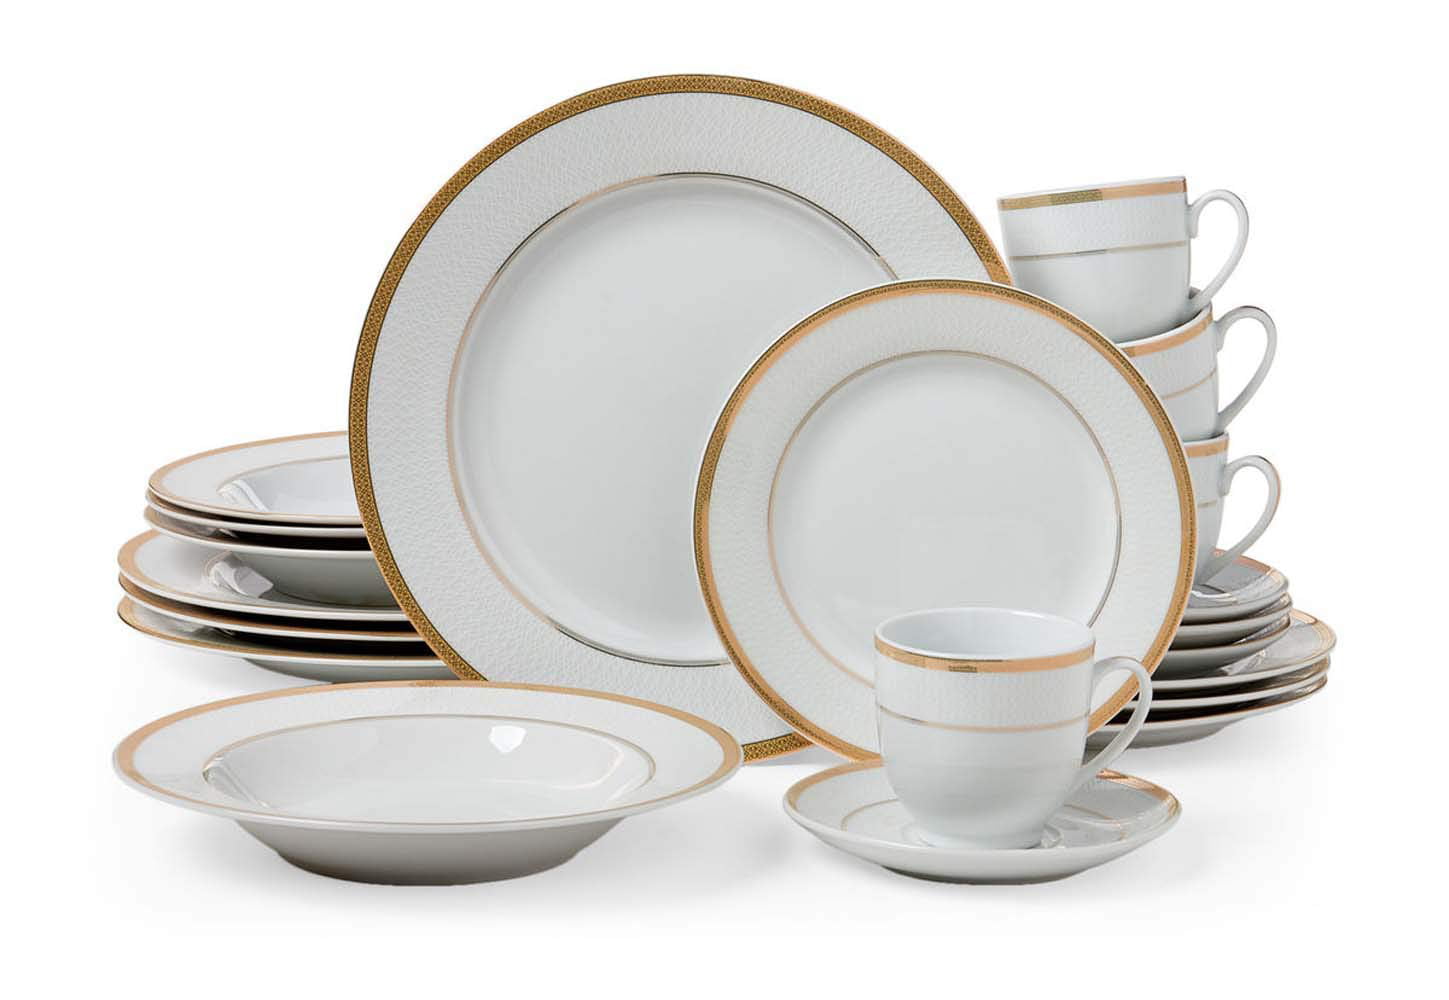 China dinnerware sets